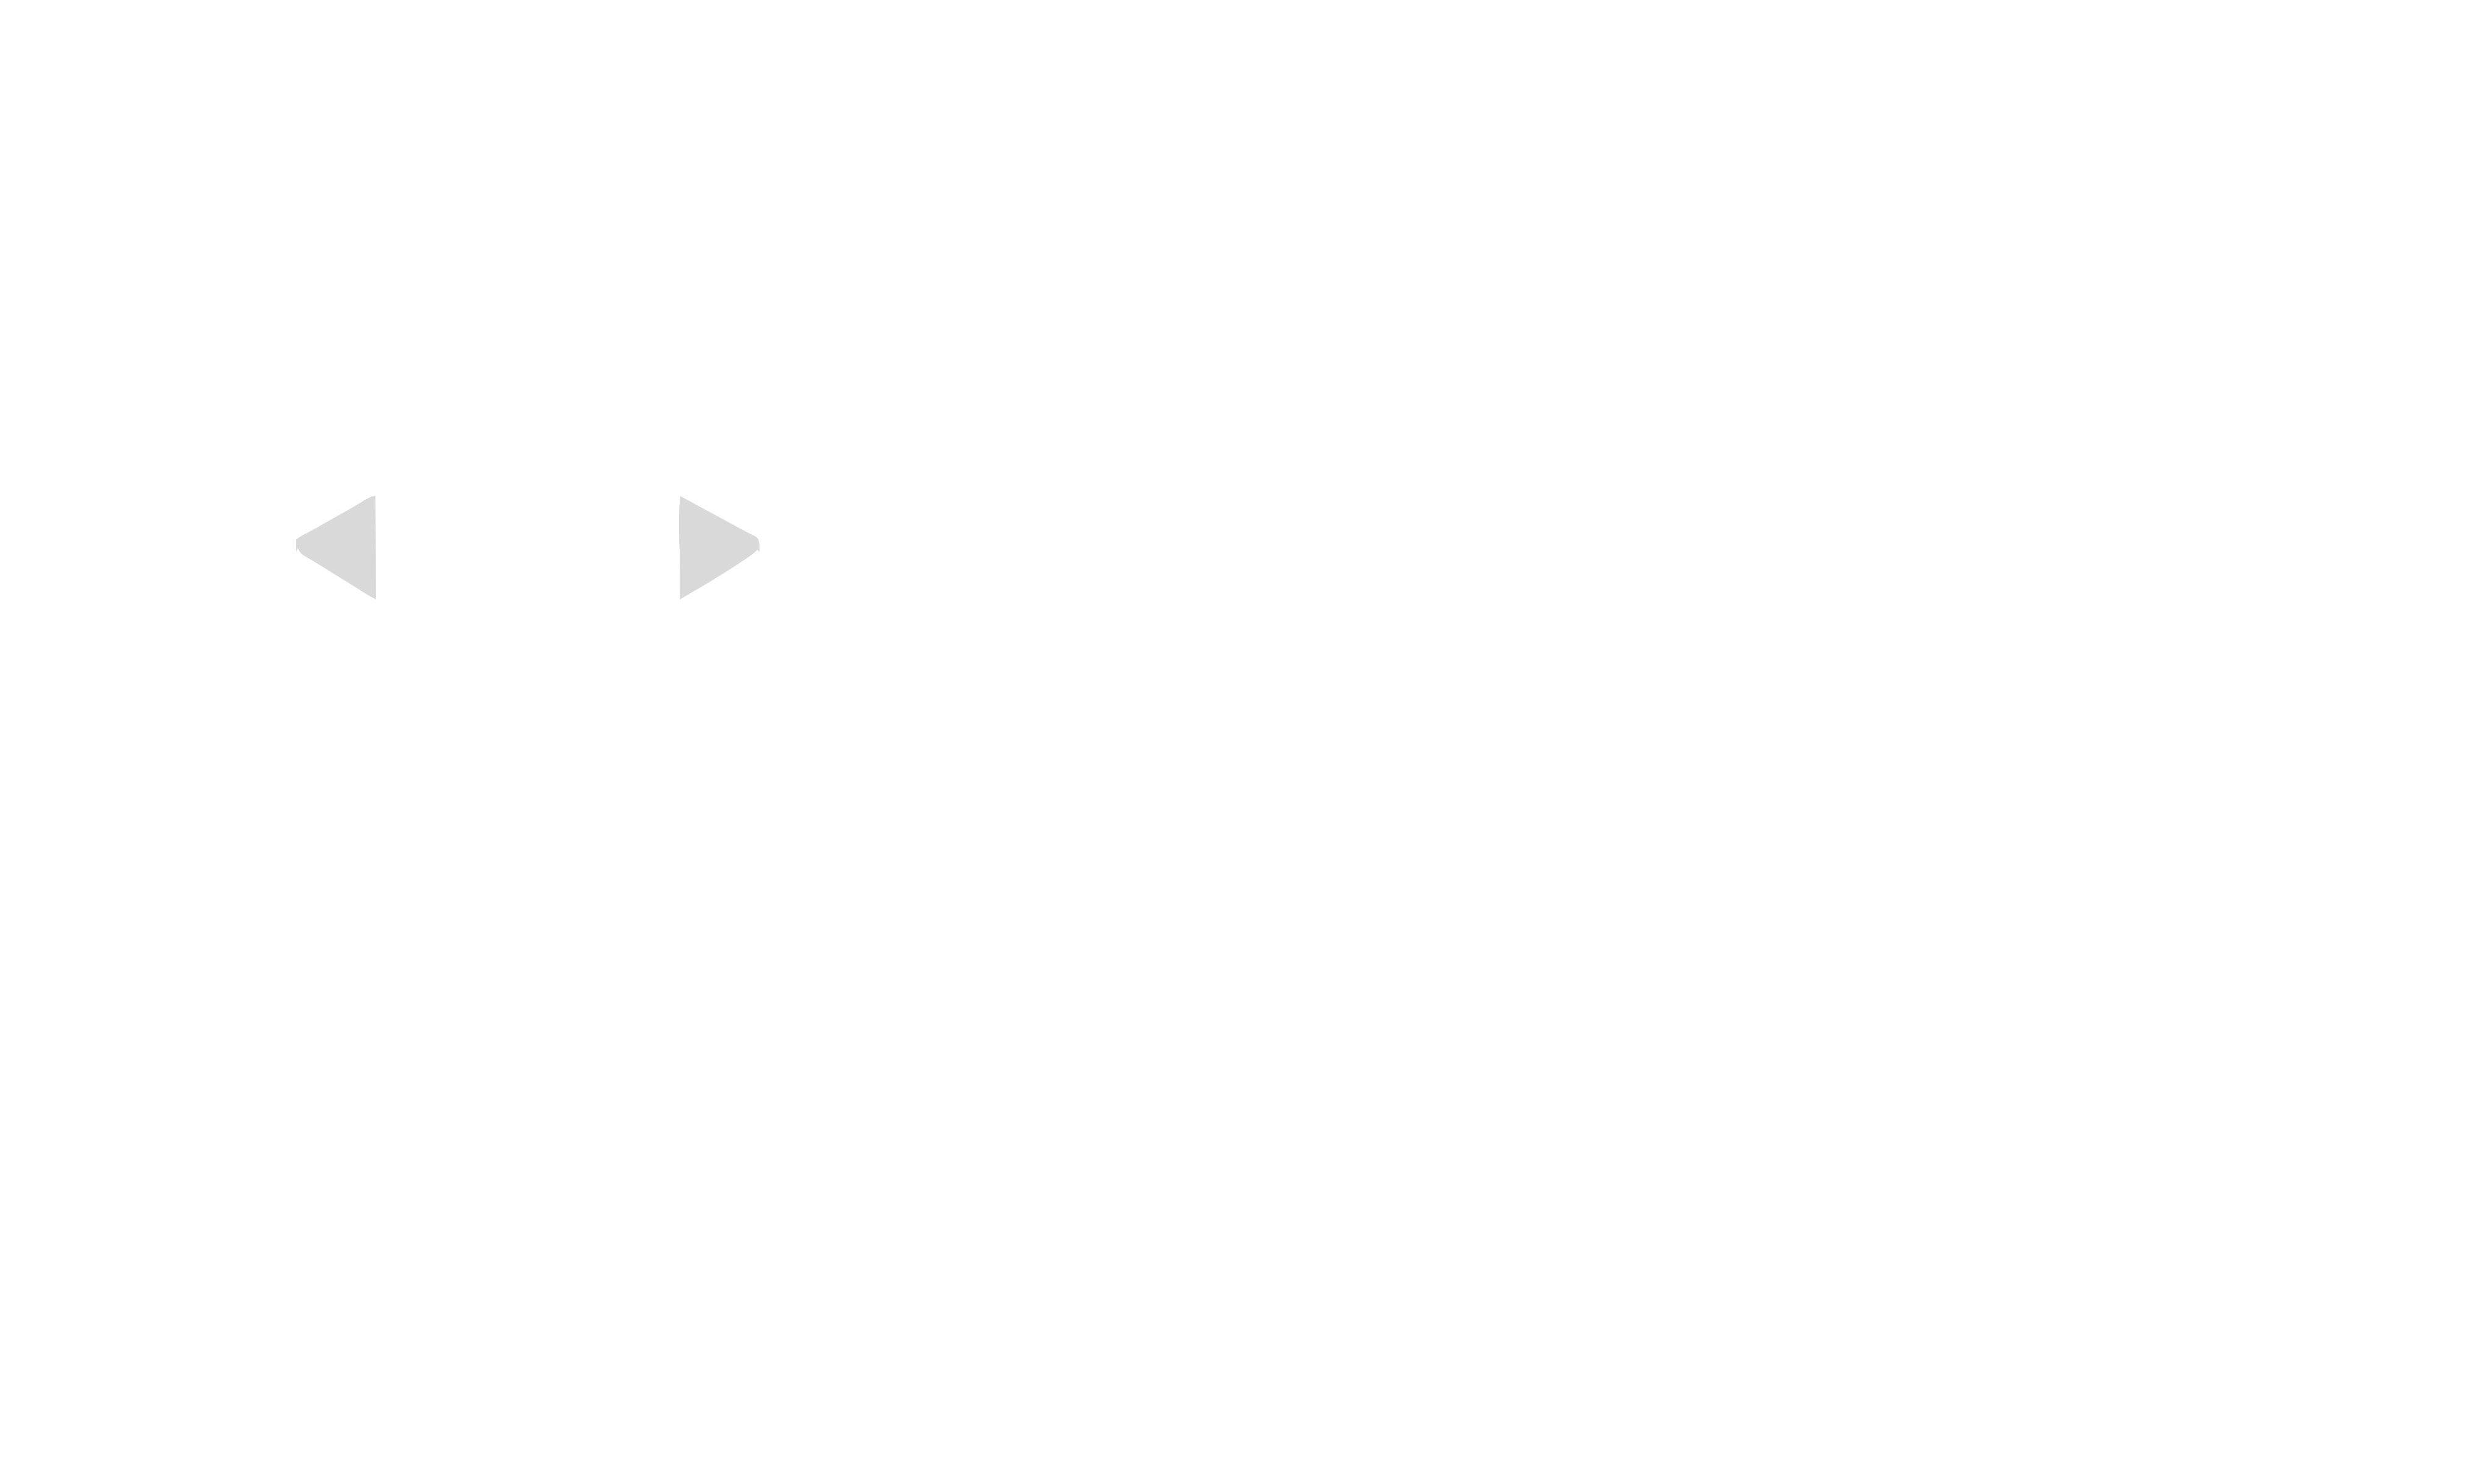 Fundação São Francisco de Assis